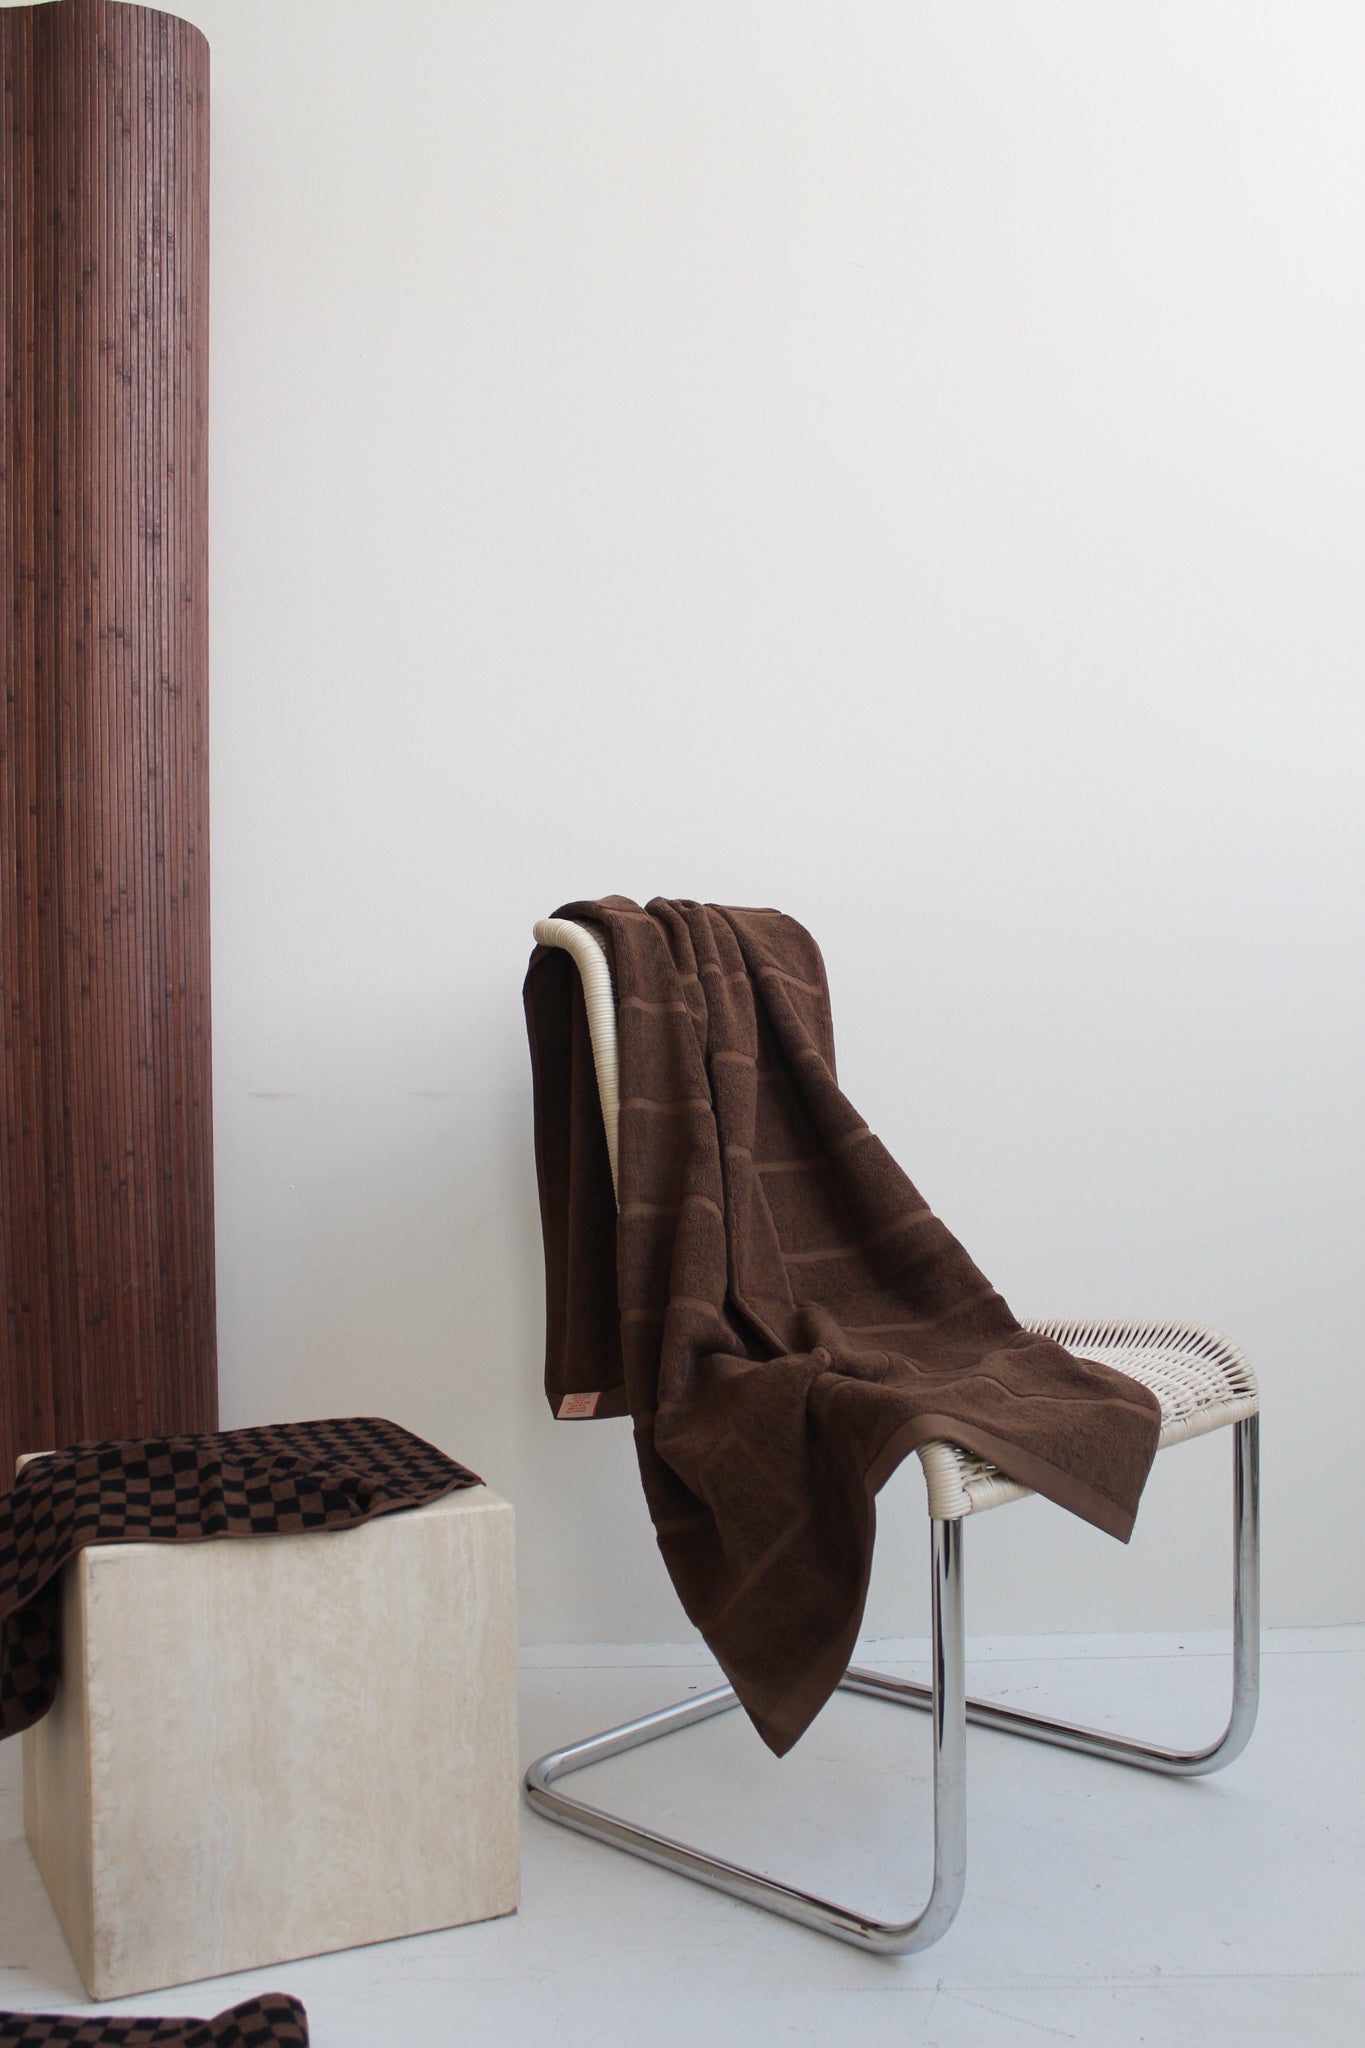 Greenwich Bath Towel in Tabac by Baina